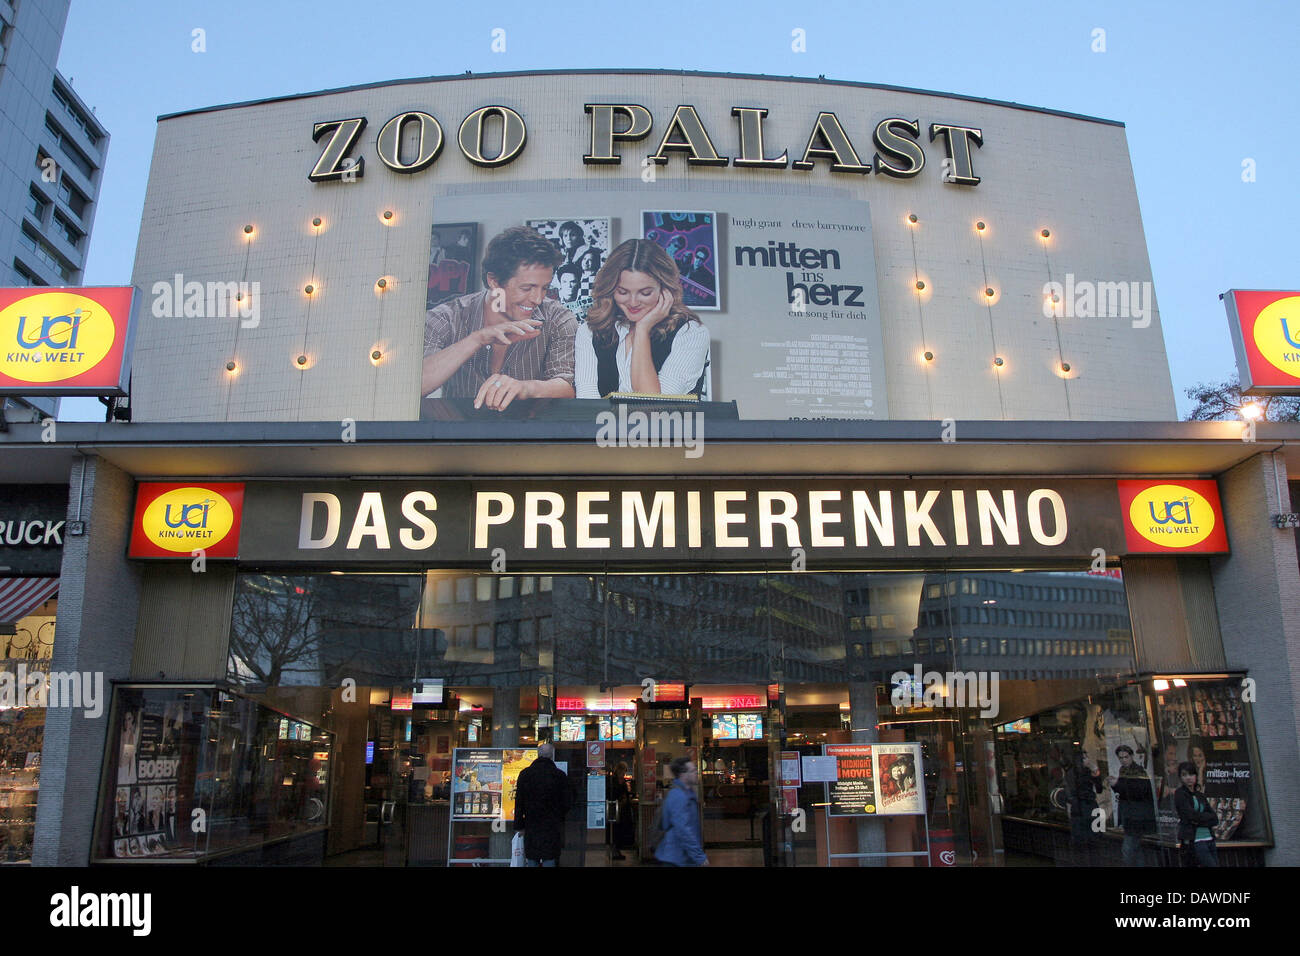 La photo montre le Zoo Palast cinéma, un cinéma où la plupart des premières allemandes sont lancés, à Berlin, Allemagne, 06 mars 2007. Photo : Heiko Wolfraum Banque D'Images